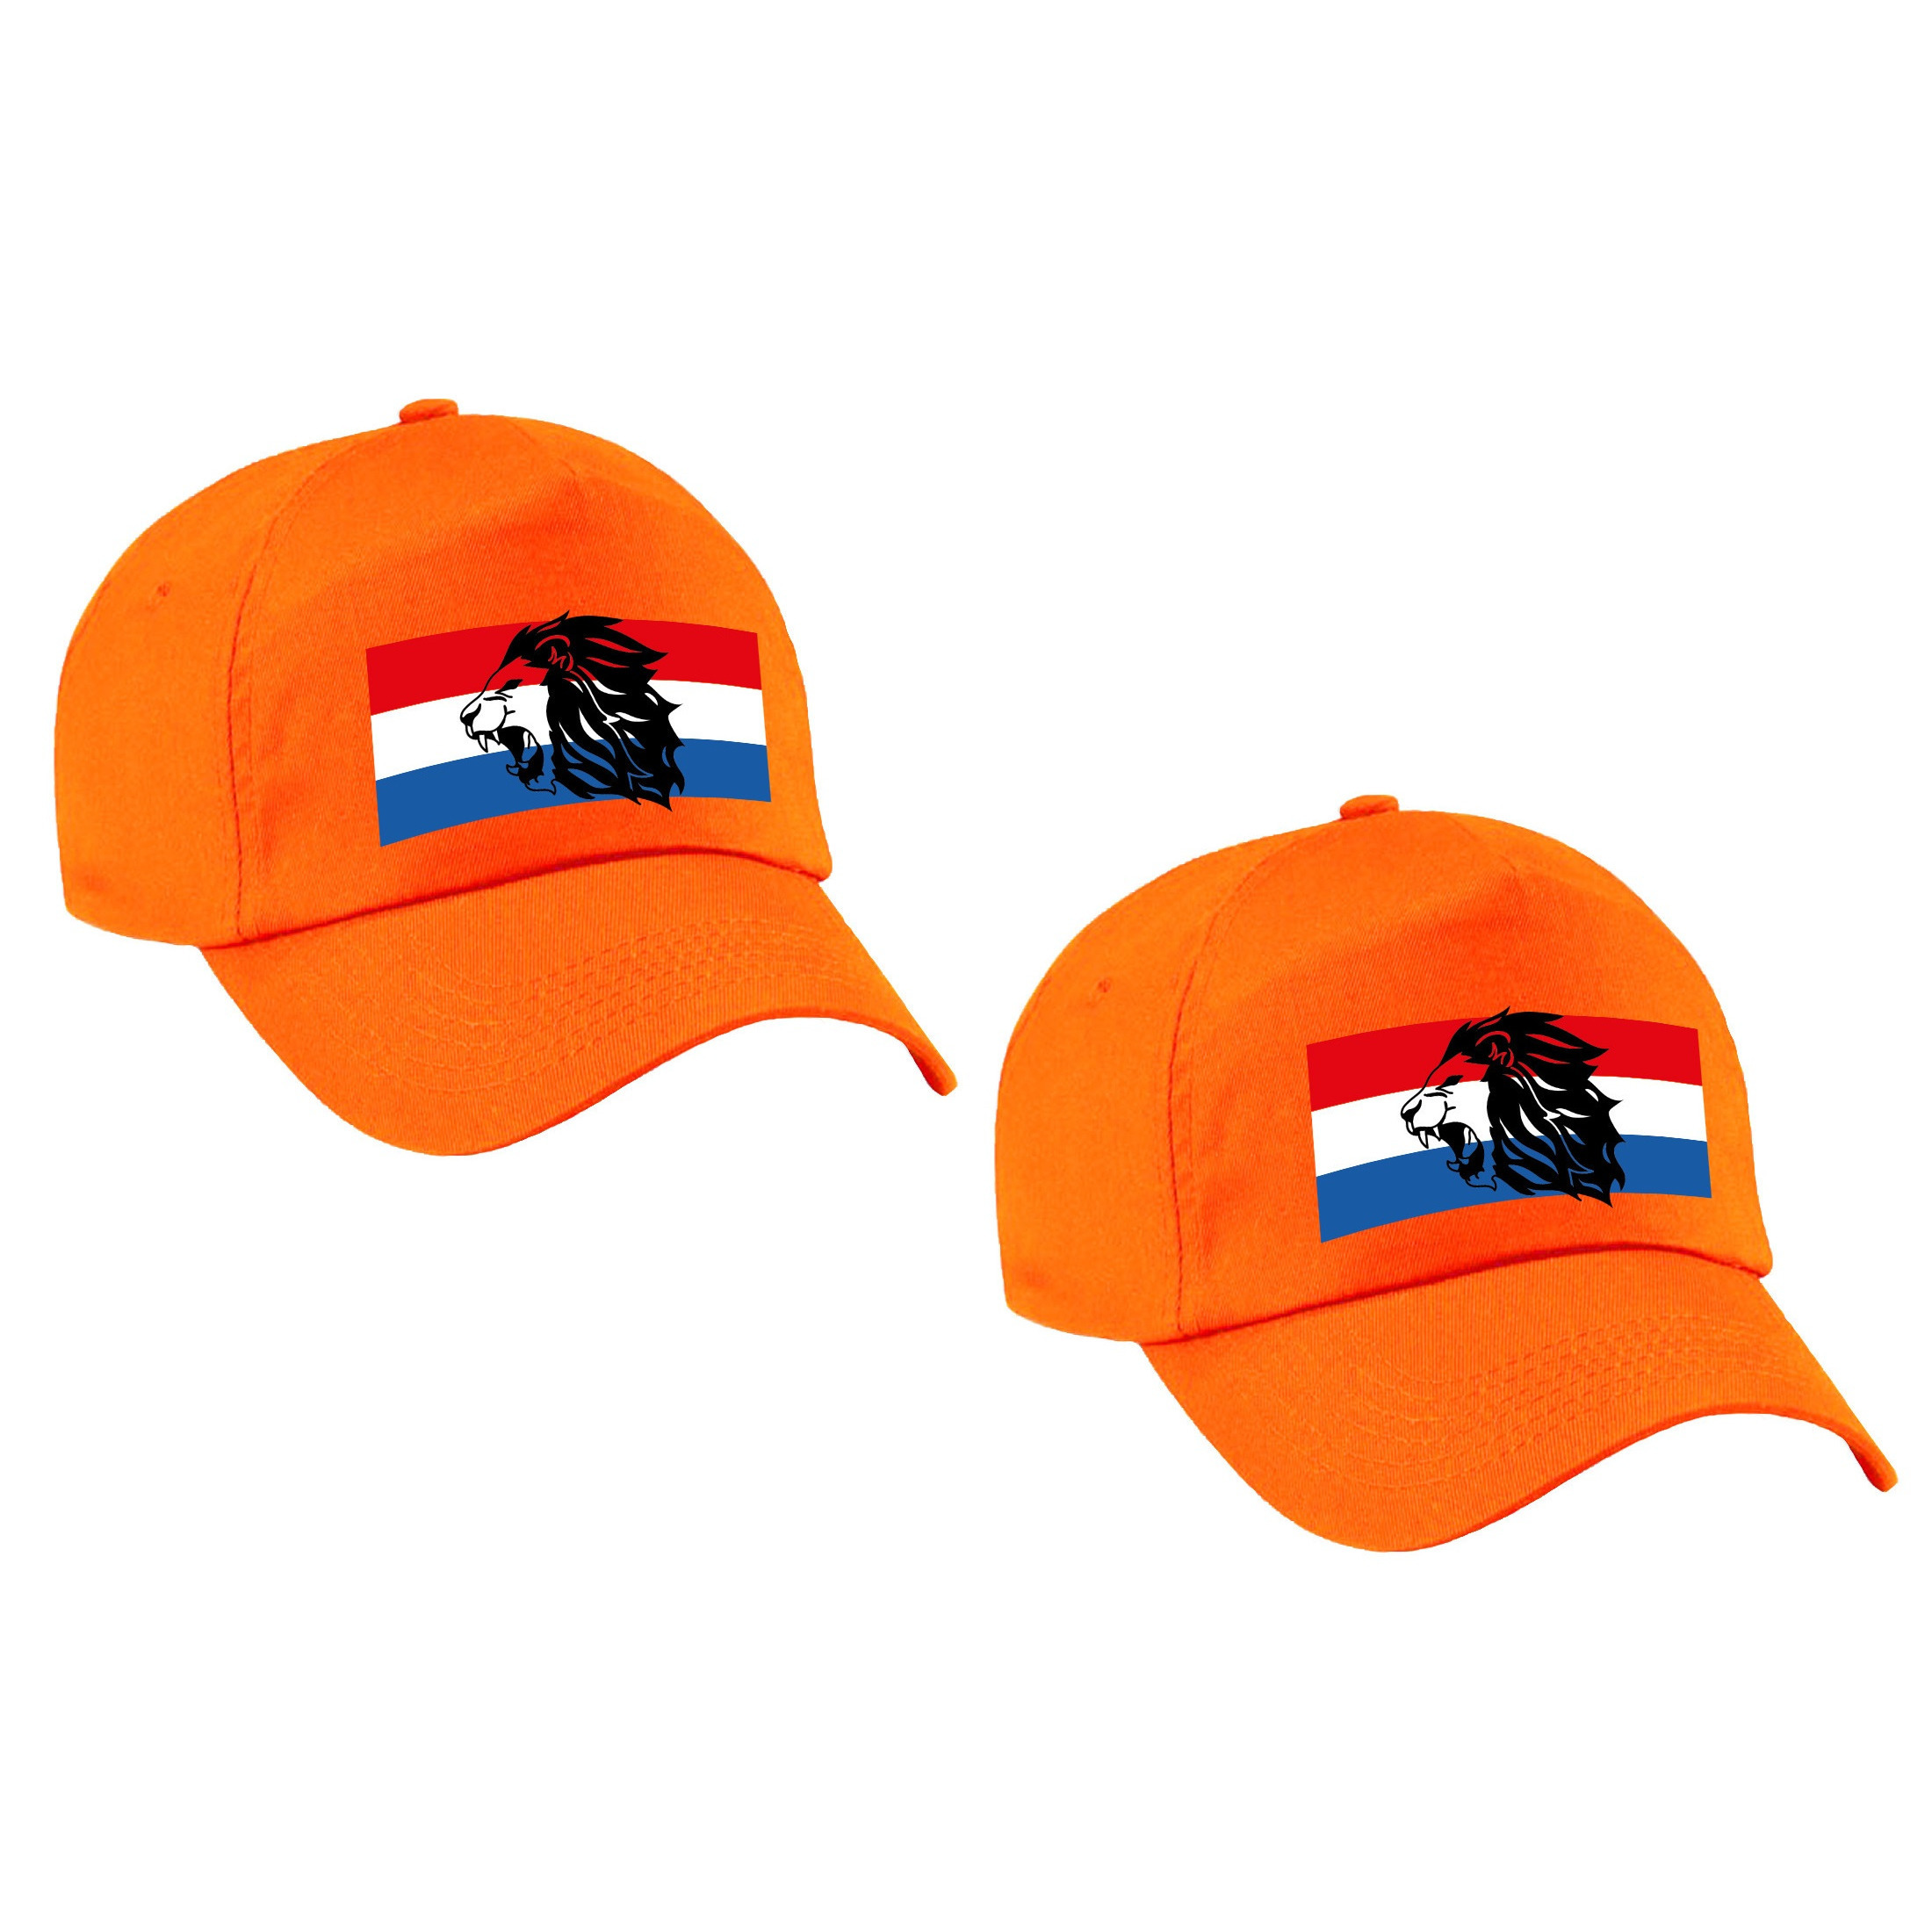 2x stuks Holland supporter pet - cap met de oranje leeuw en Nederlandse vlag - EK - WK voor volwasse